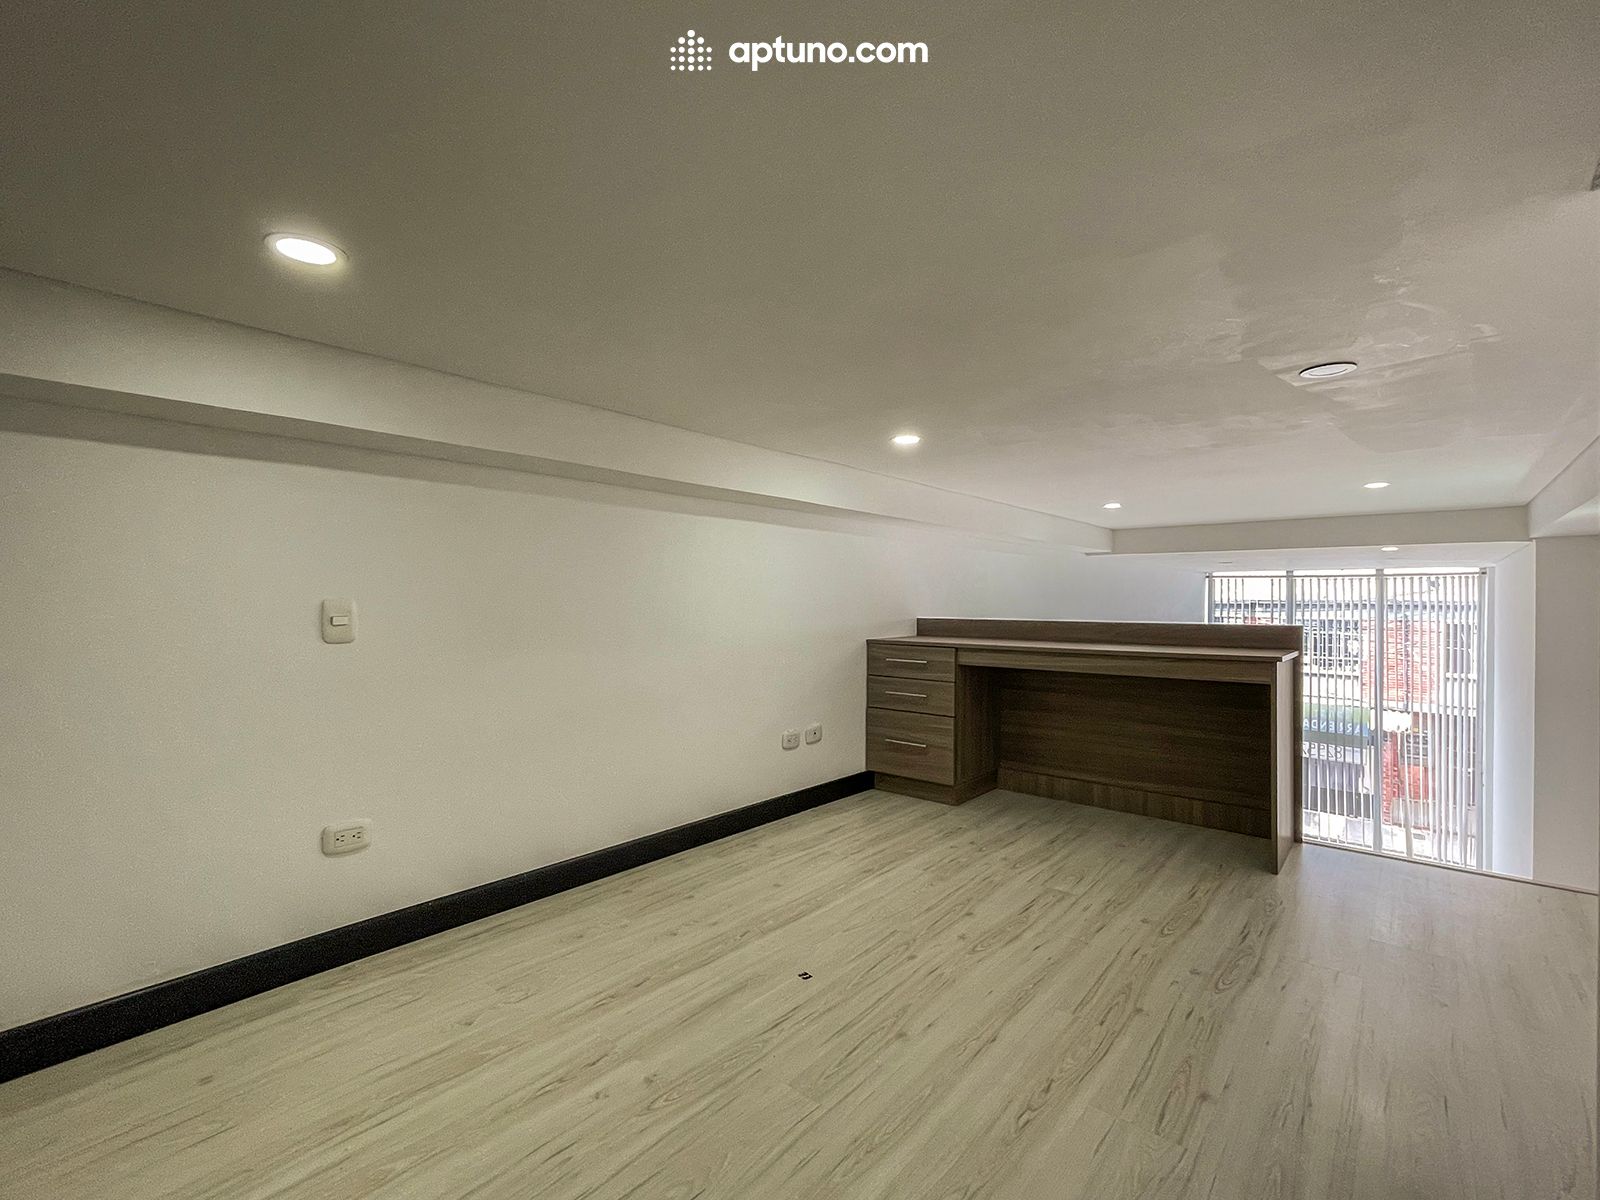 Apartamento en arriendo Chapinero Occidental 37 m² - $ 1.400.000